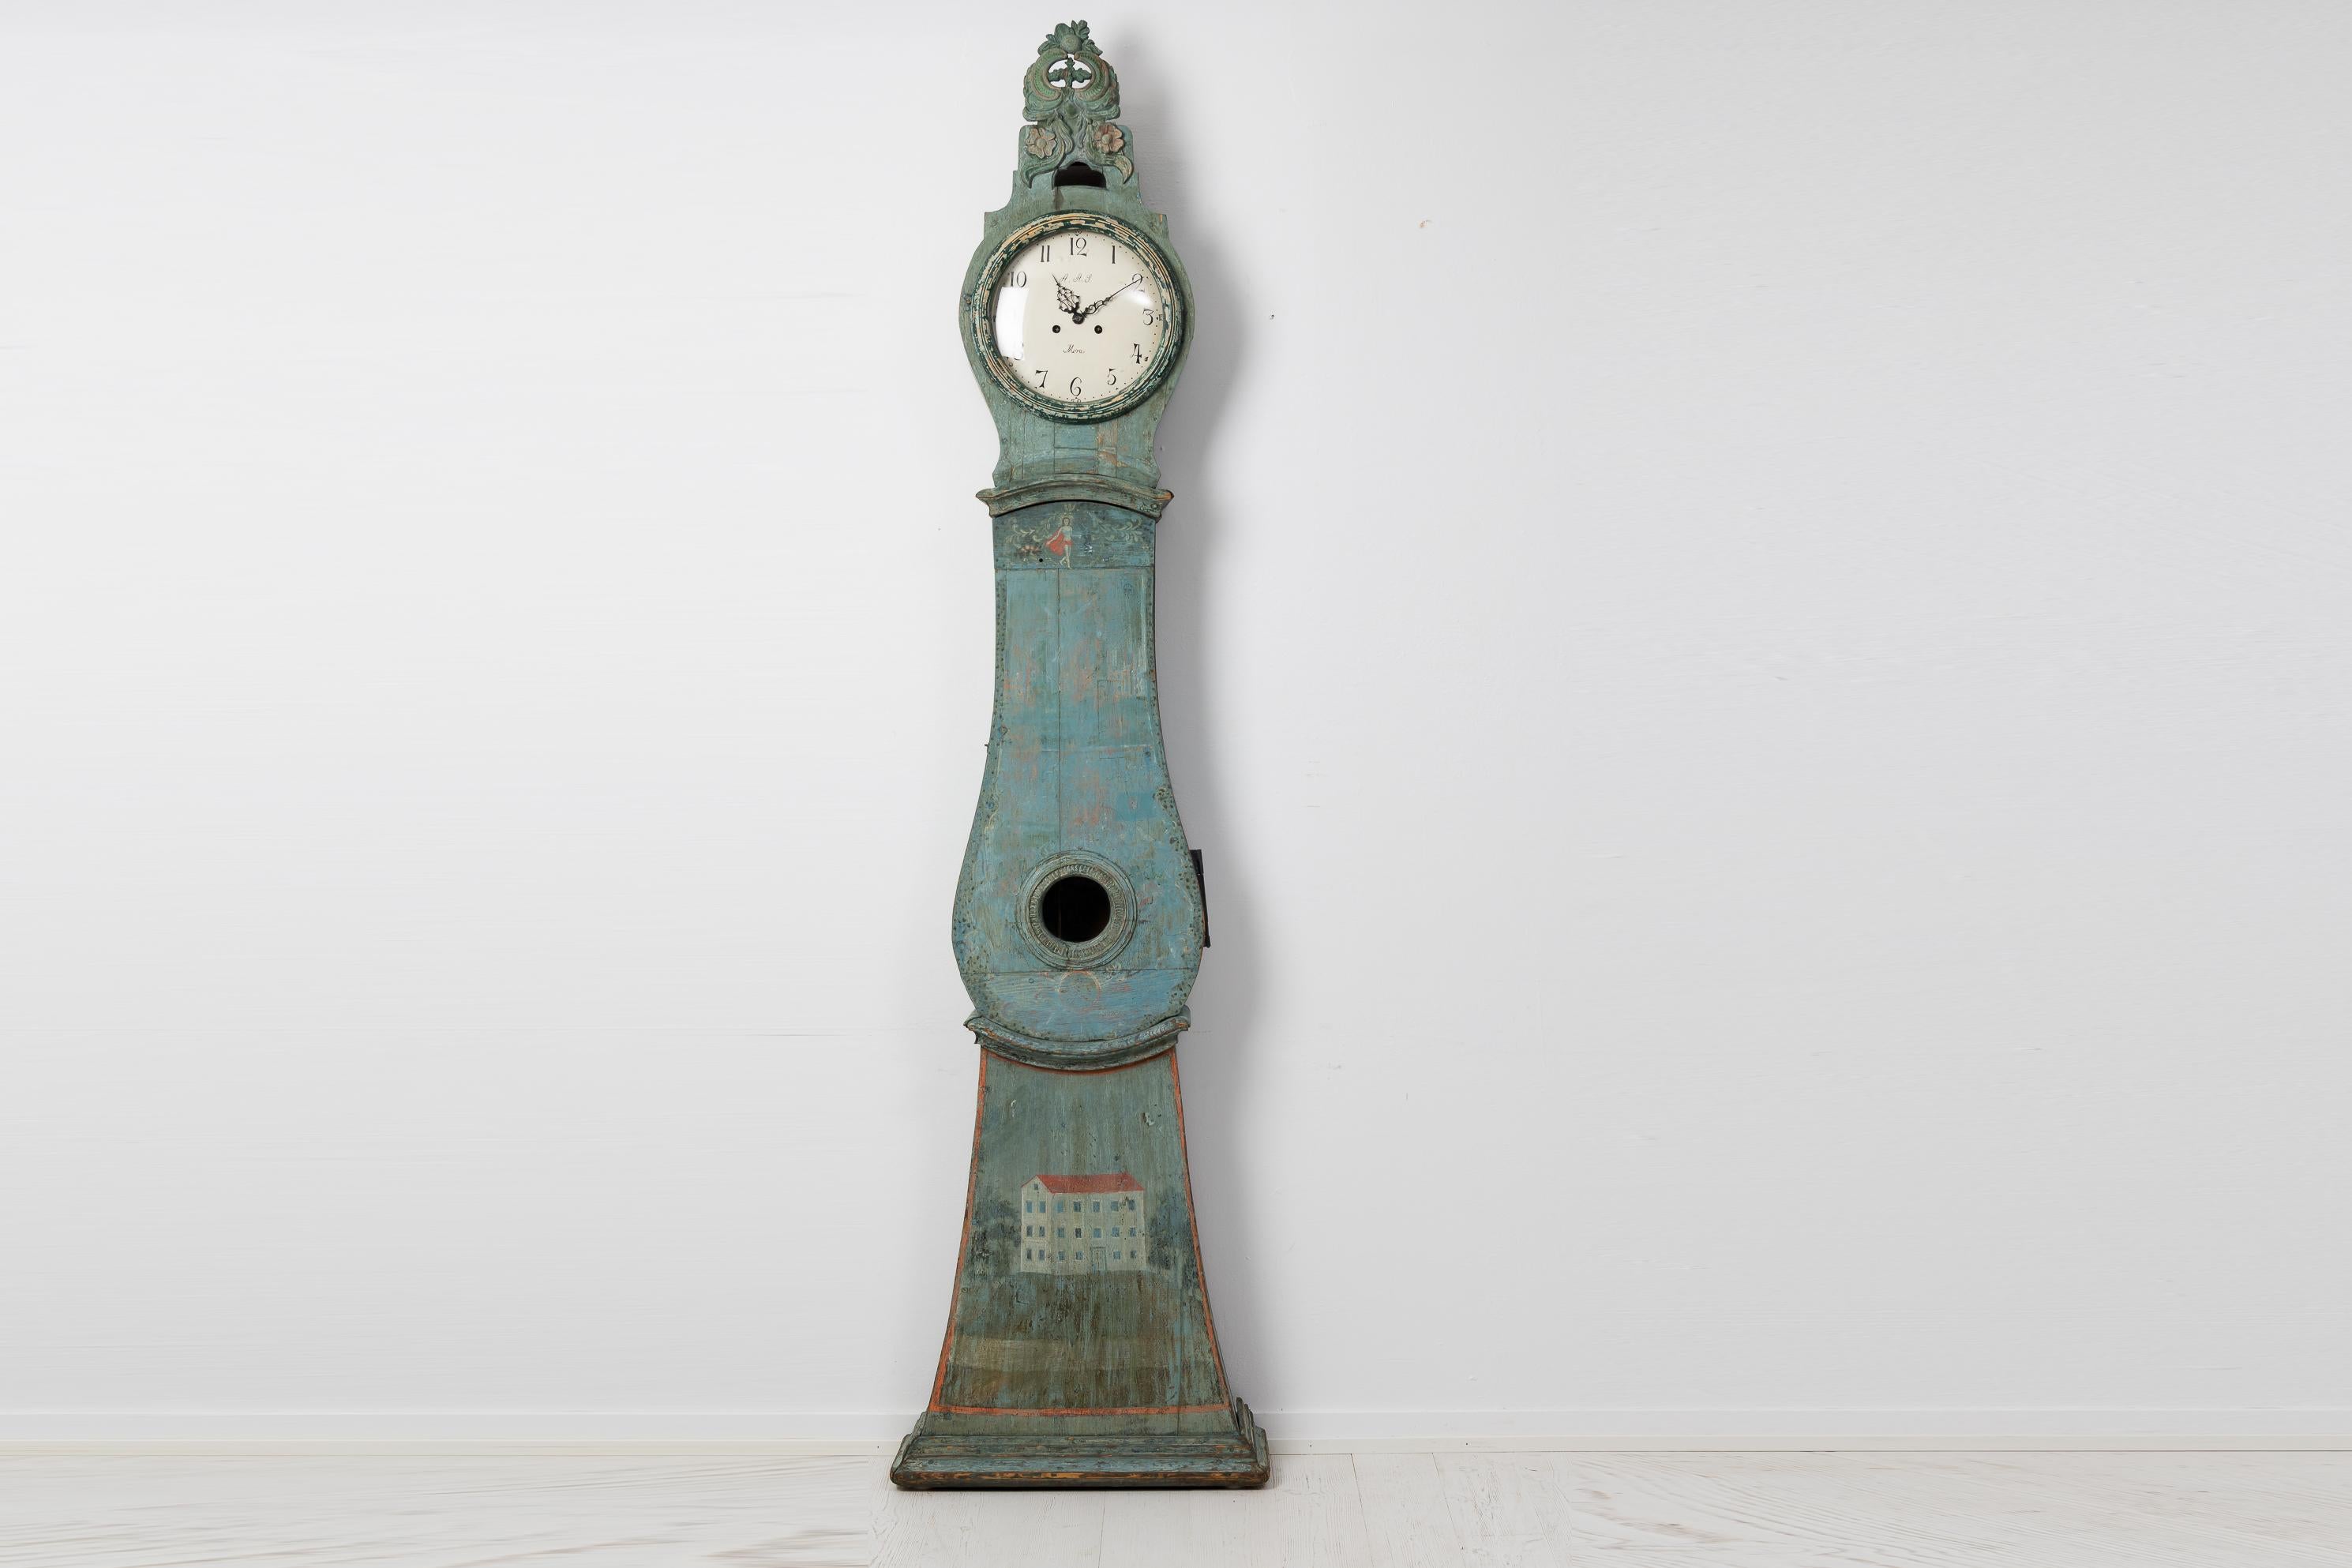 Horloge à long boîtier du nord de la Suède, fabriquée à la fin des années 1700. L'horloge est peinte en bleu-vert d'origine et présente un décor inhabituel. Le temps a également créé une patine unique qui ajoute au caractère de l'horloge. En outre,